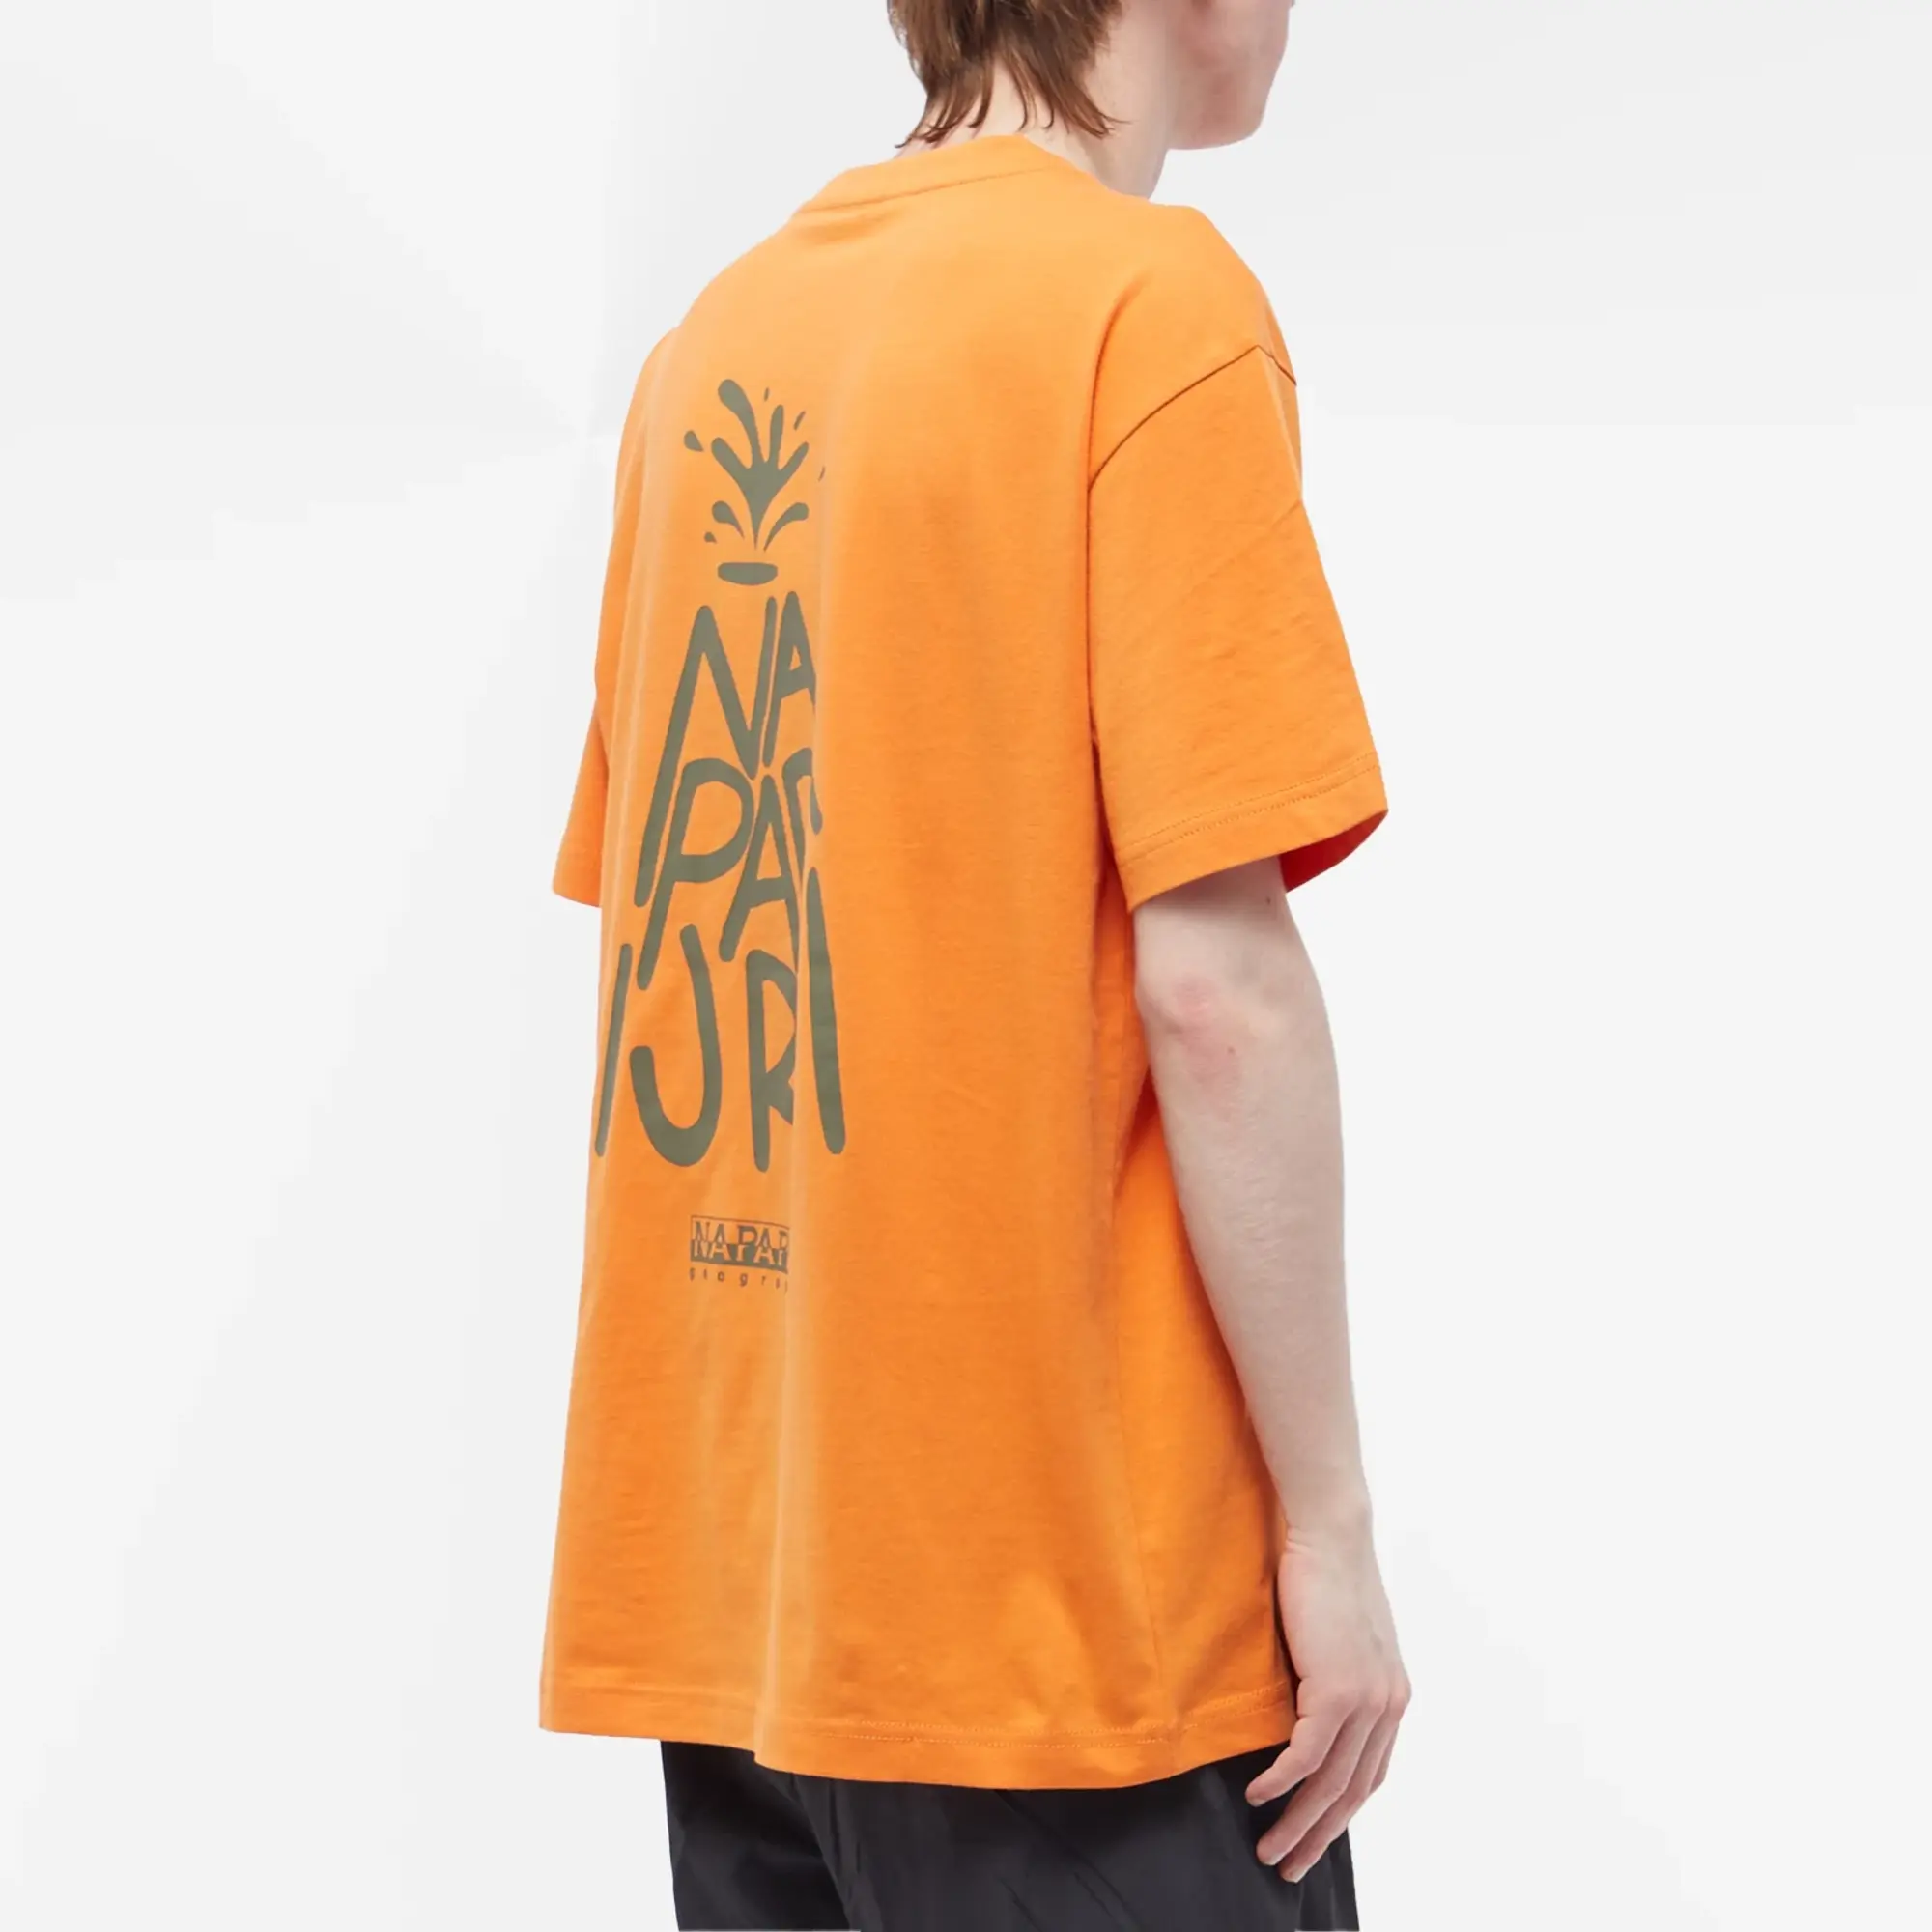 Napapijri Men's T-Shirt Orange